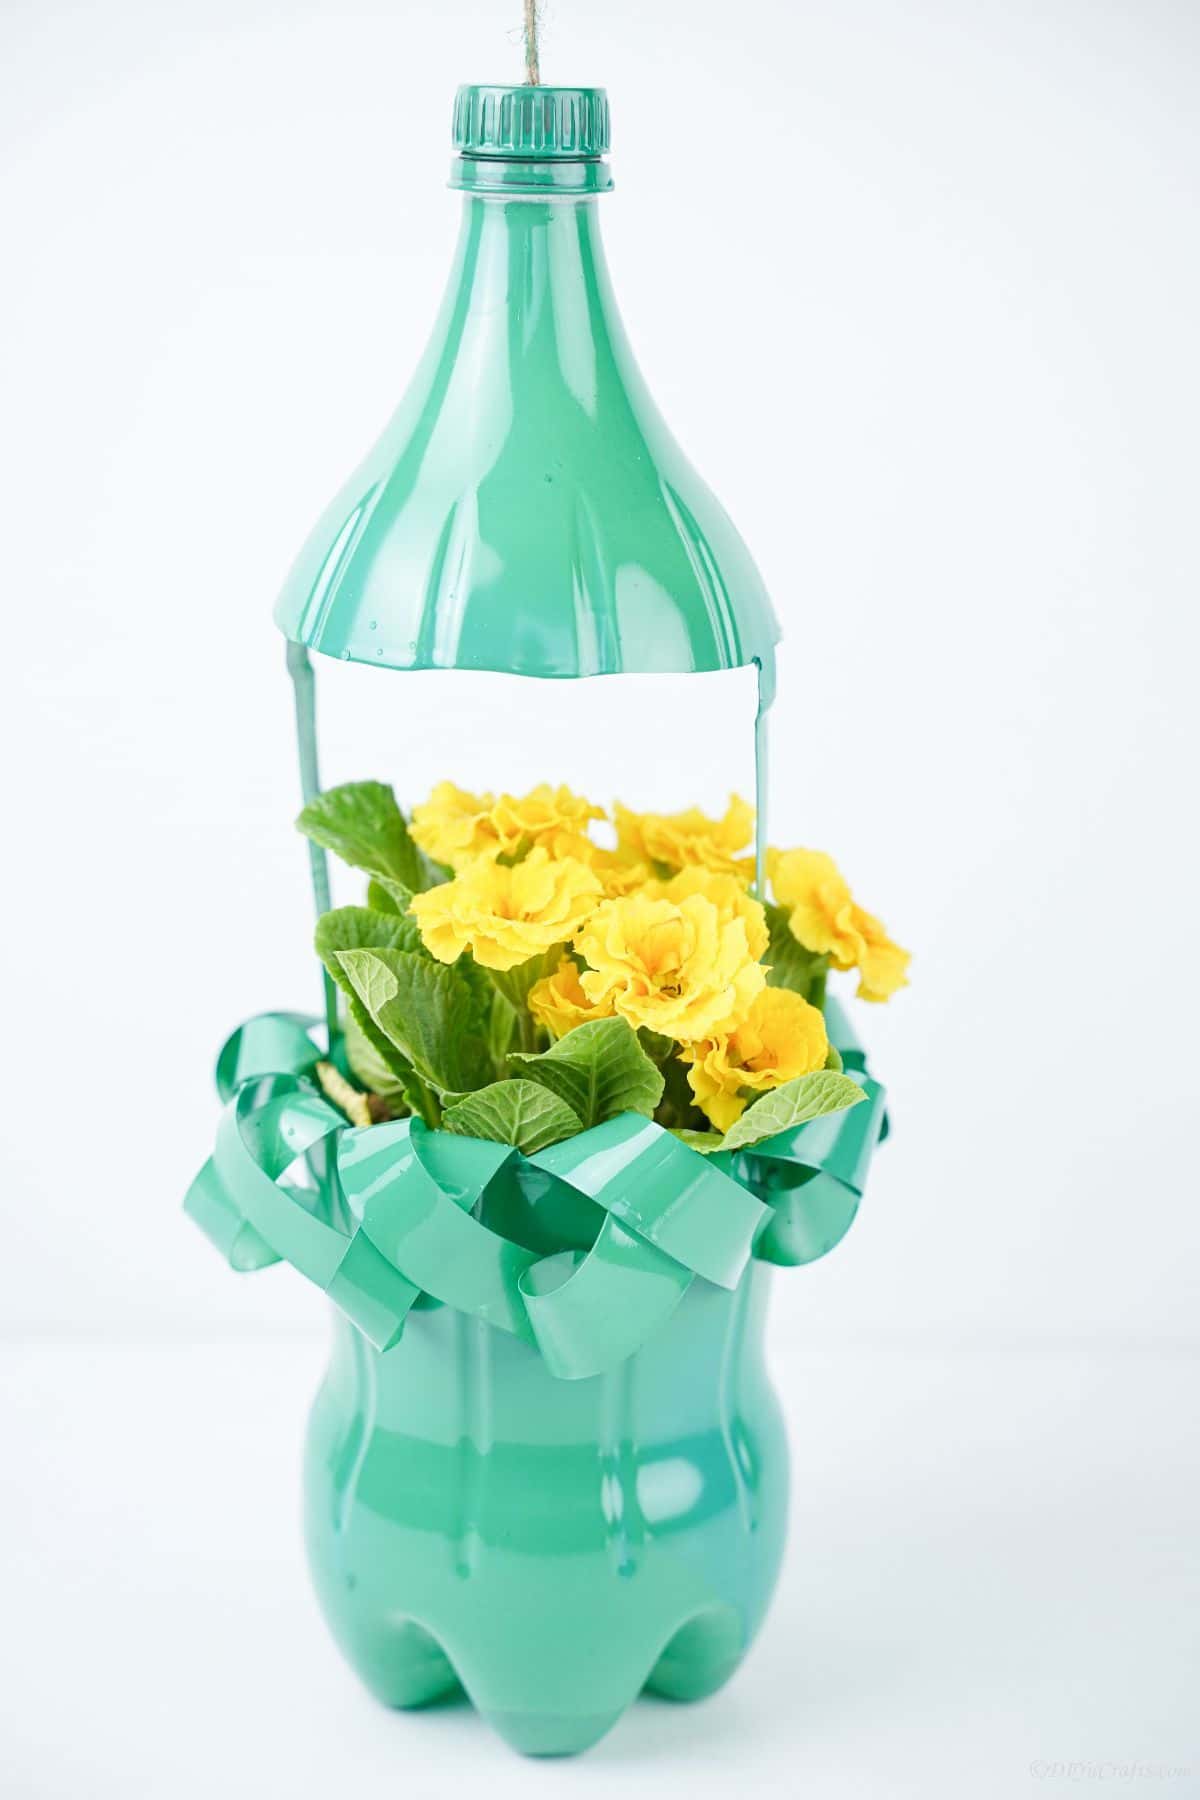 green plastic bottle planter on white background